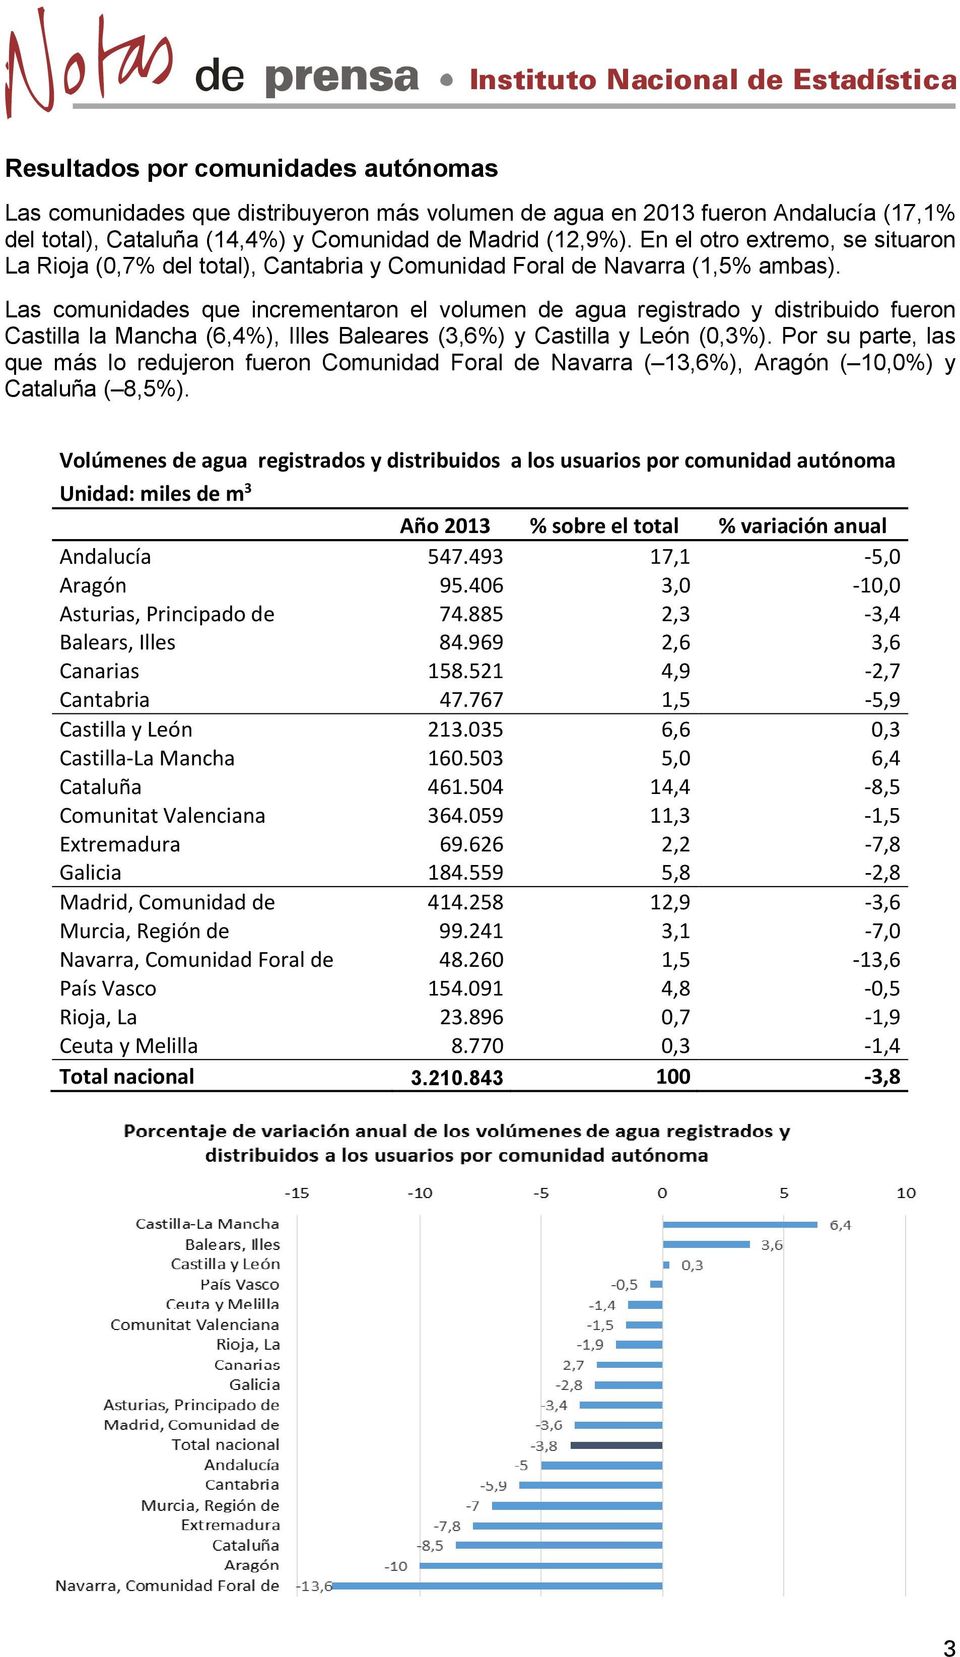 Las comunidades que incrementaron el volumen de agua registrado y distribuido fueron Castilla la Mancha (6,4%), Illes Baleares (3,6%) y Castilla y León (0,3%).